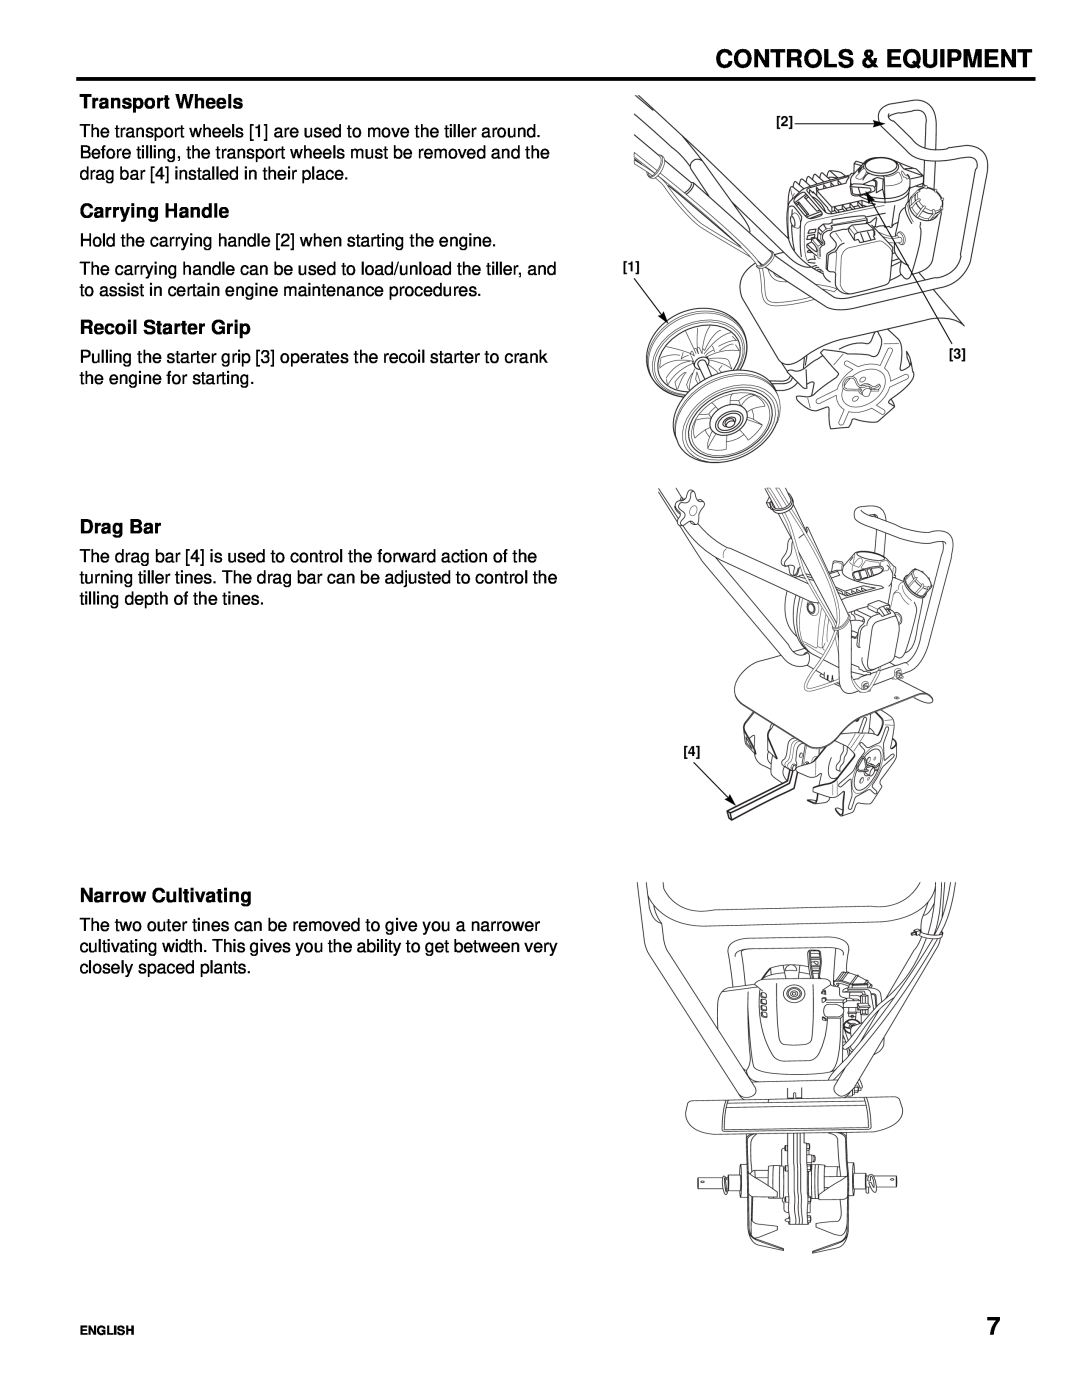 Honda Power Equipment Honda Mini-Tiller, FG110 Transport Wheels, Carrying Handle, Recoil Starter Grip, Drag Bar 